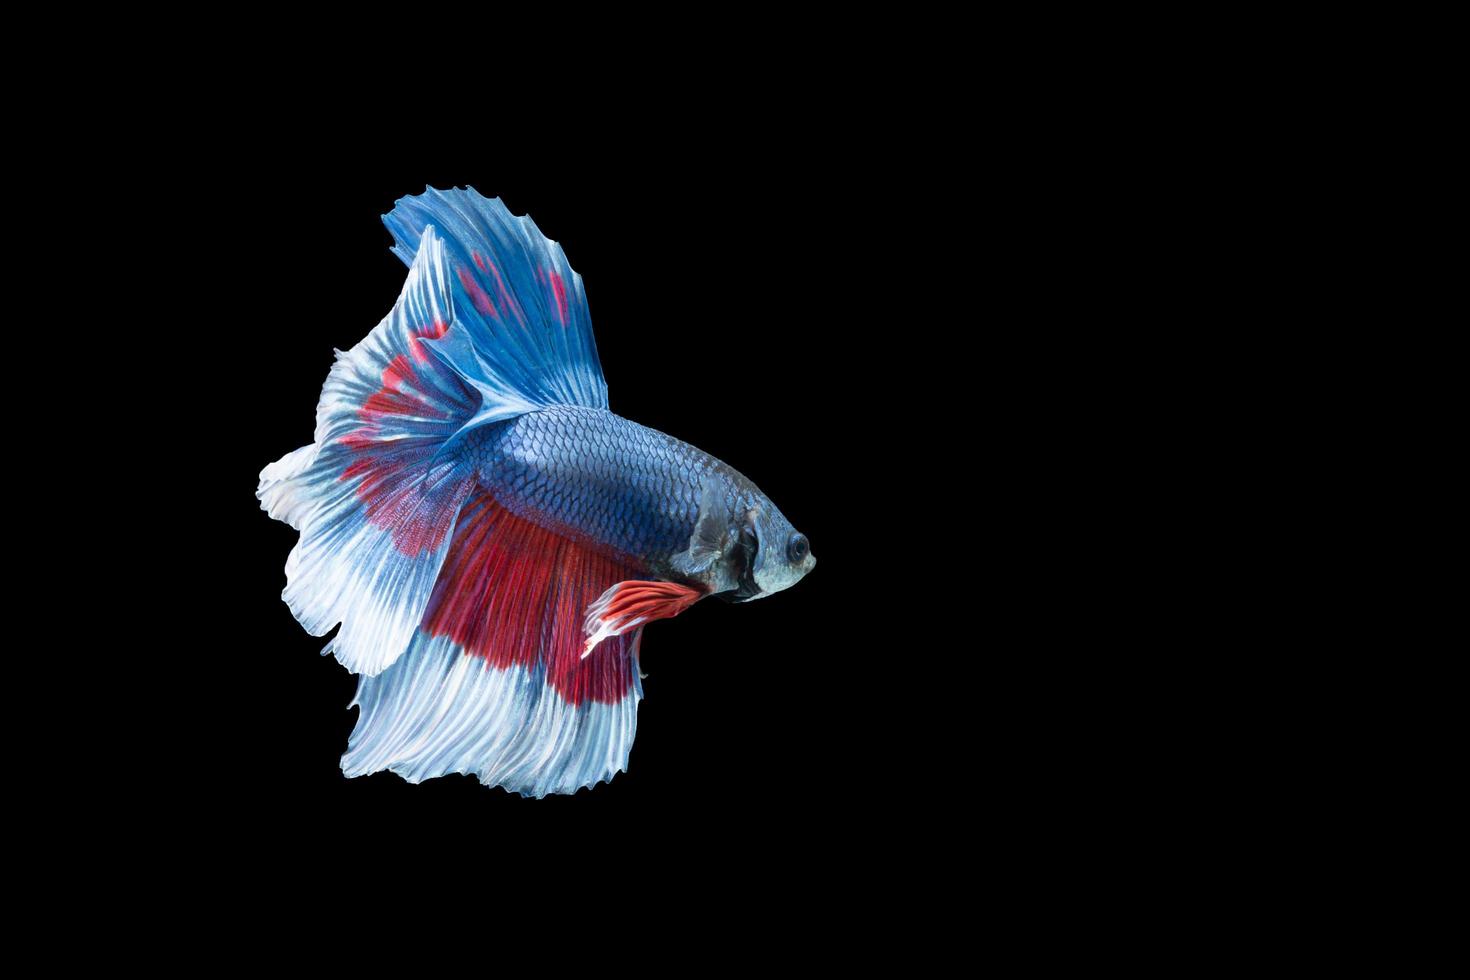 Halbmond Betta Fisch mit blauen und roten Streifen foto